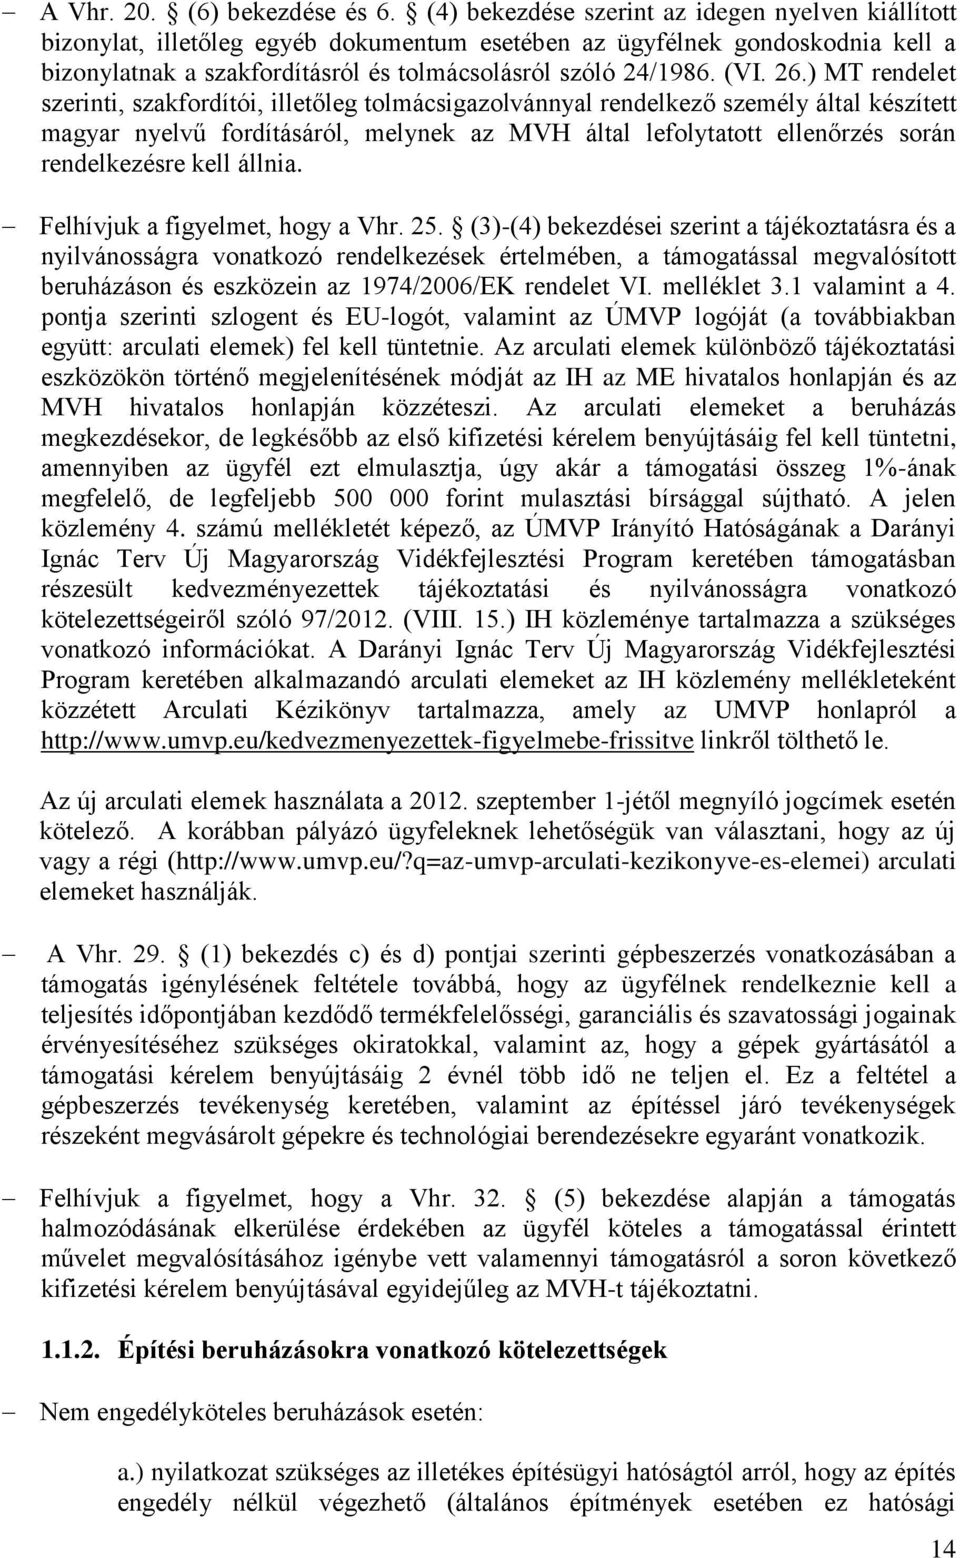 26.) MT rendelet szerinti, szakfordítói, illetőleg tolmácsigazolvánnyal rendelkező személy által készített magyar nyelvű fordításáról, melynek az MVH által lefolytatott ellenőrzés során rendelkezésre